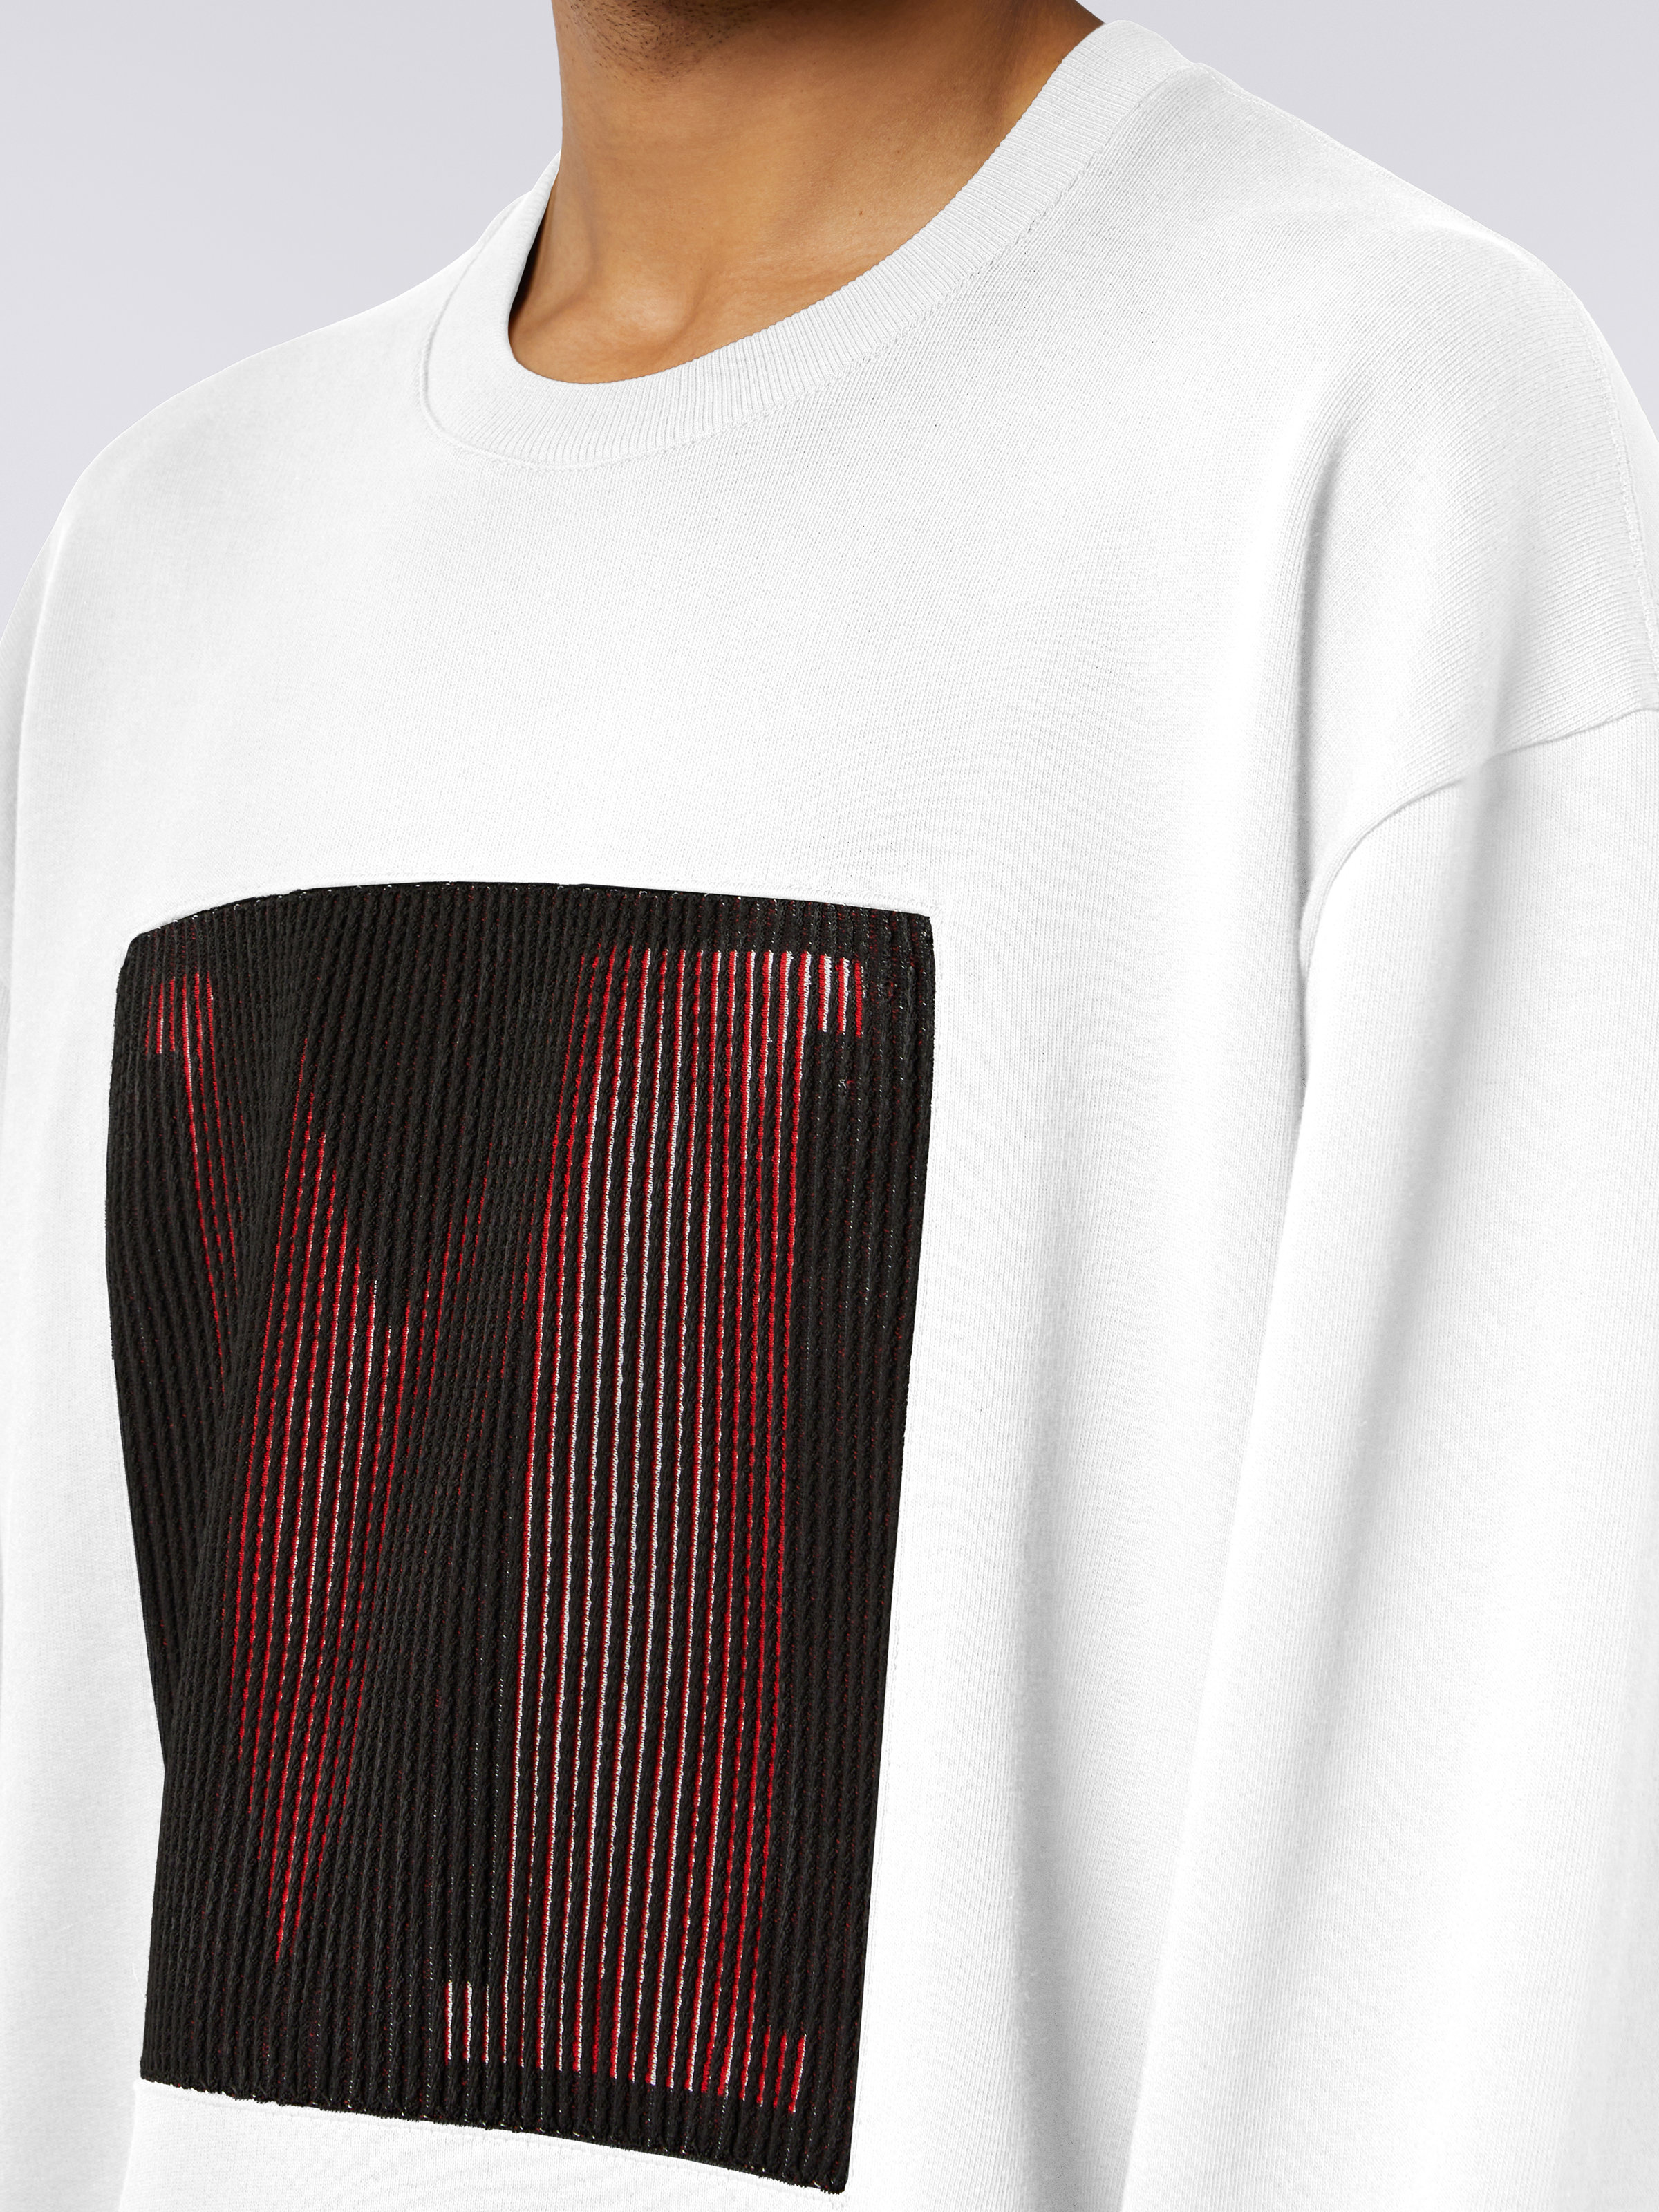 Sweatshirt aus Baumwolle mit Rundhalsausschnitt und Makro-Logo in Zusammenarbeit mit Mike Maignan, Weiß - 4